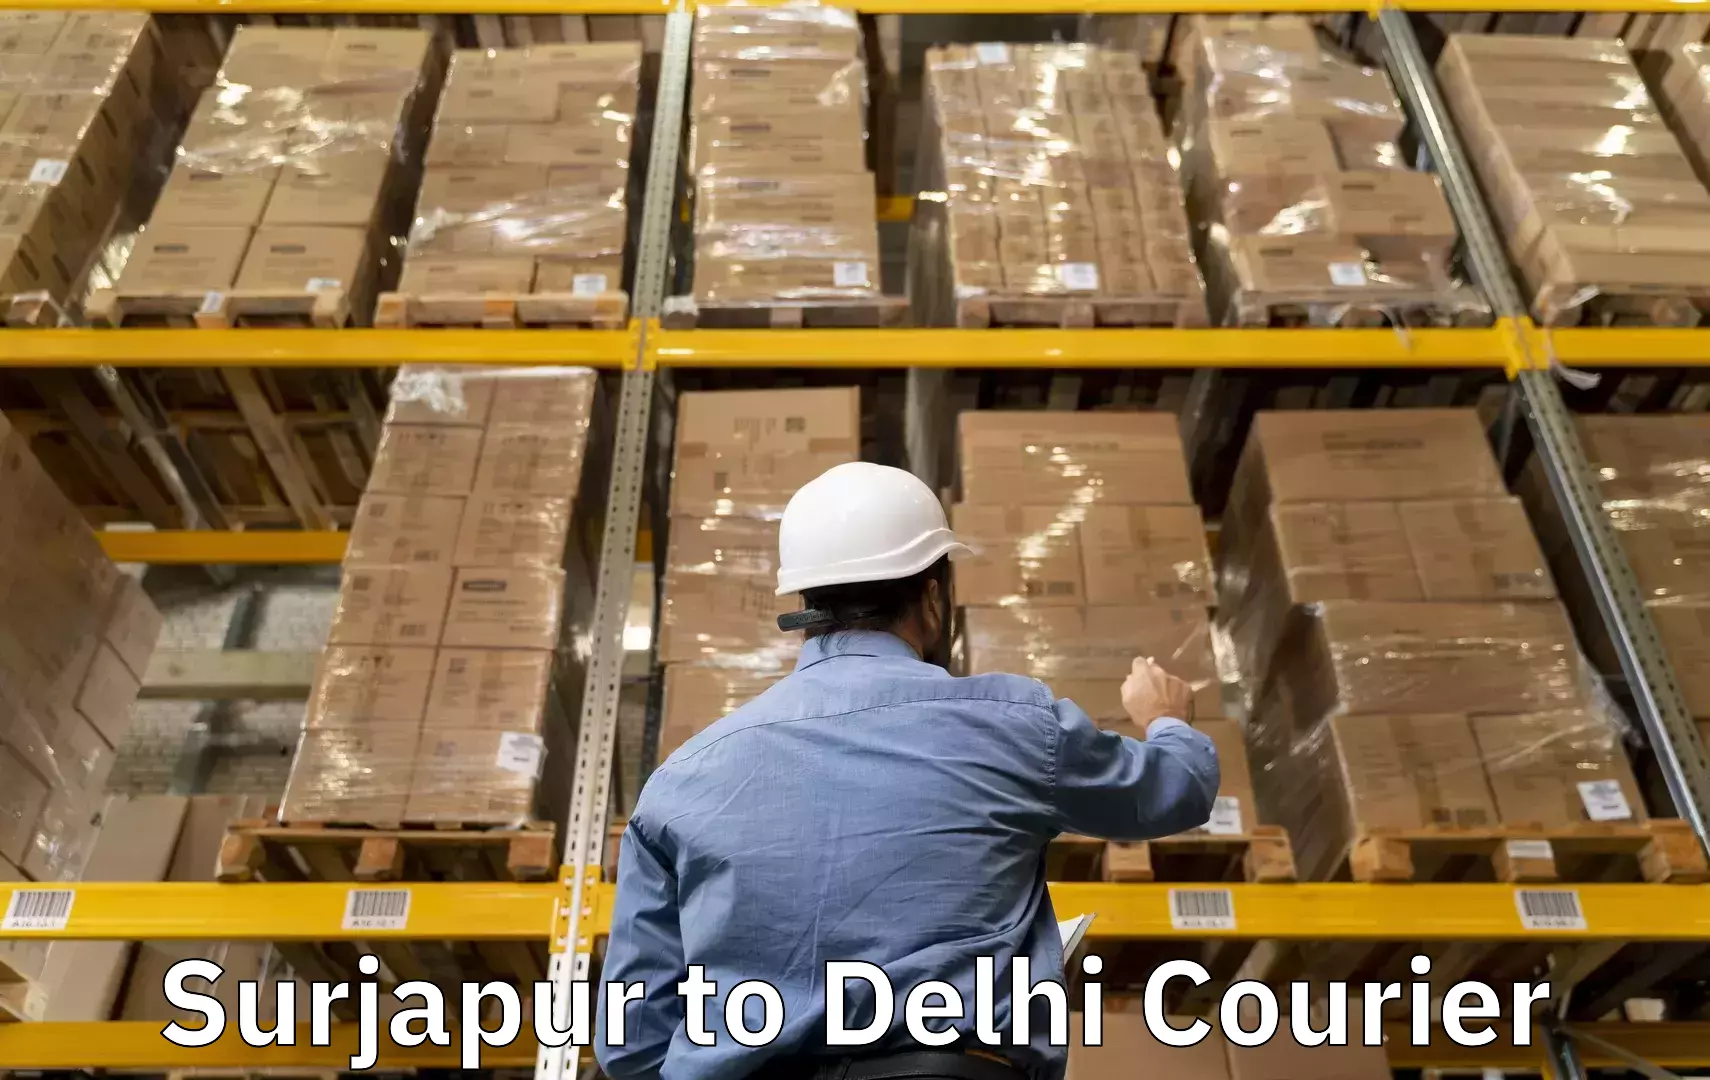 Express luggage delivery Surjapur to Jamia Millia Islamia New Delhi